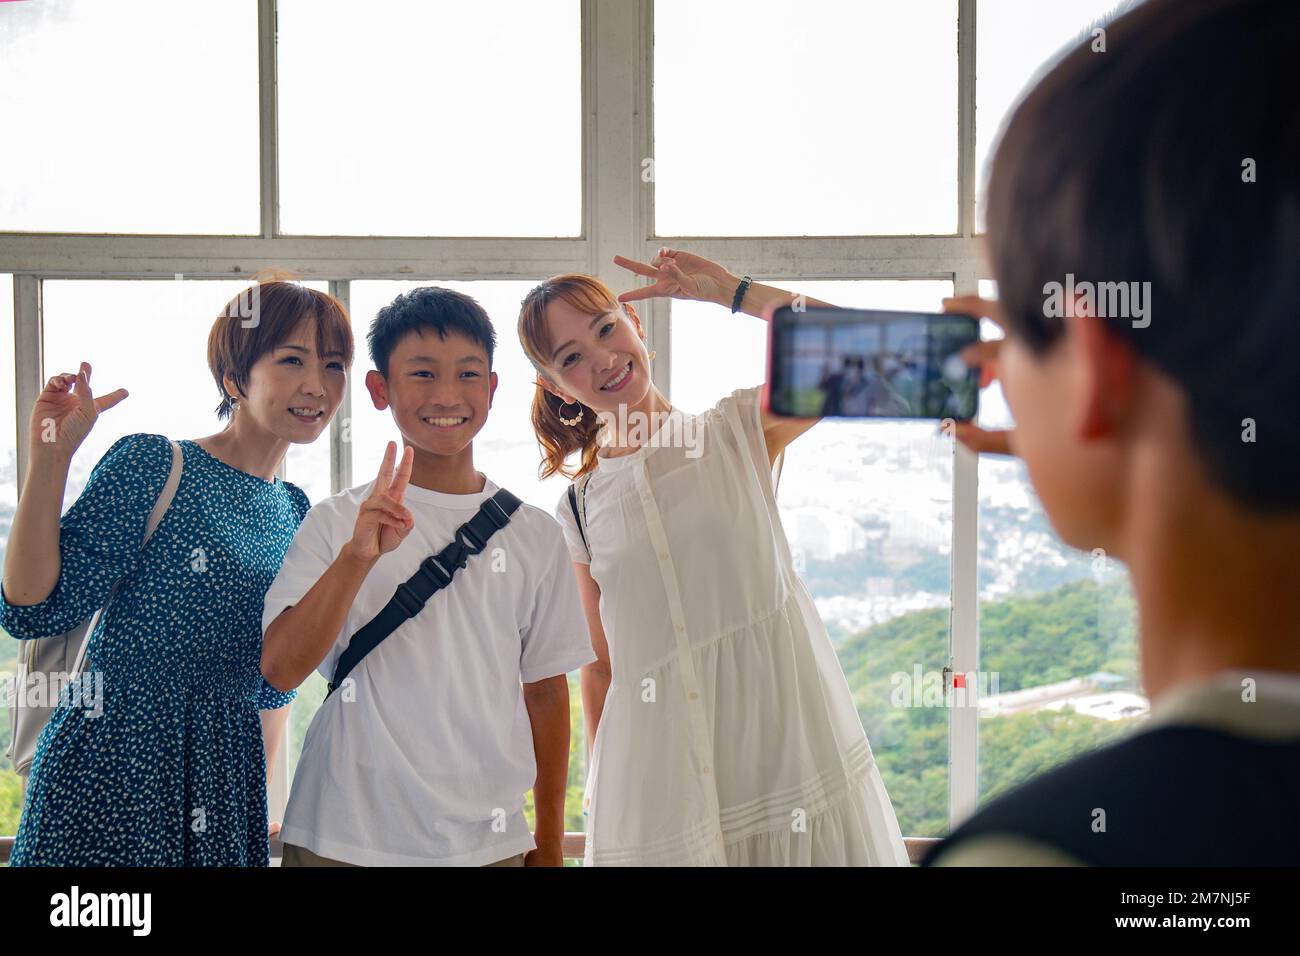 Un garçon utilisant son téléphone portable pour prendre une photo de trois personnes, un garçon de 13 ans, sa mère et un ami. Banque D'Images